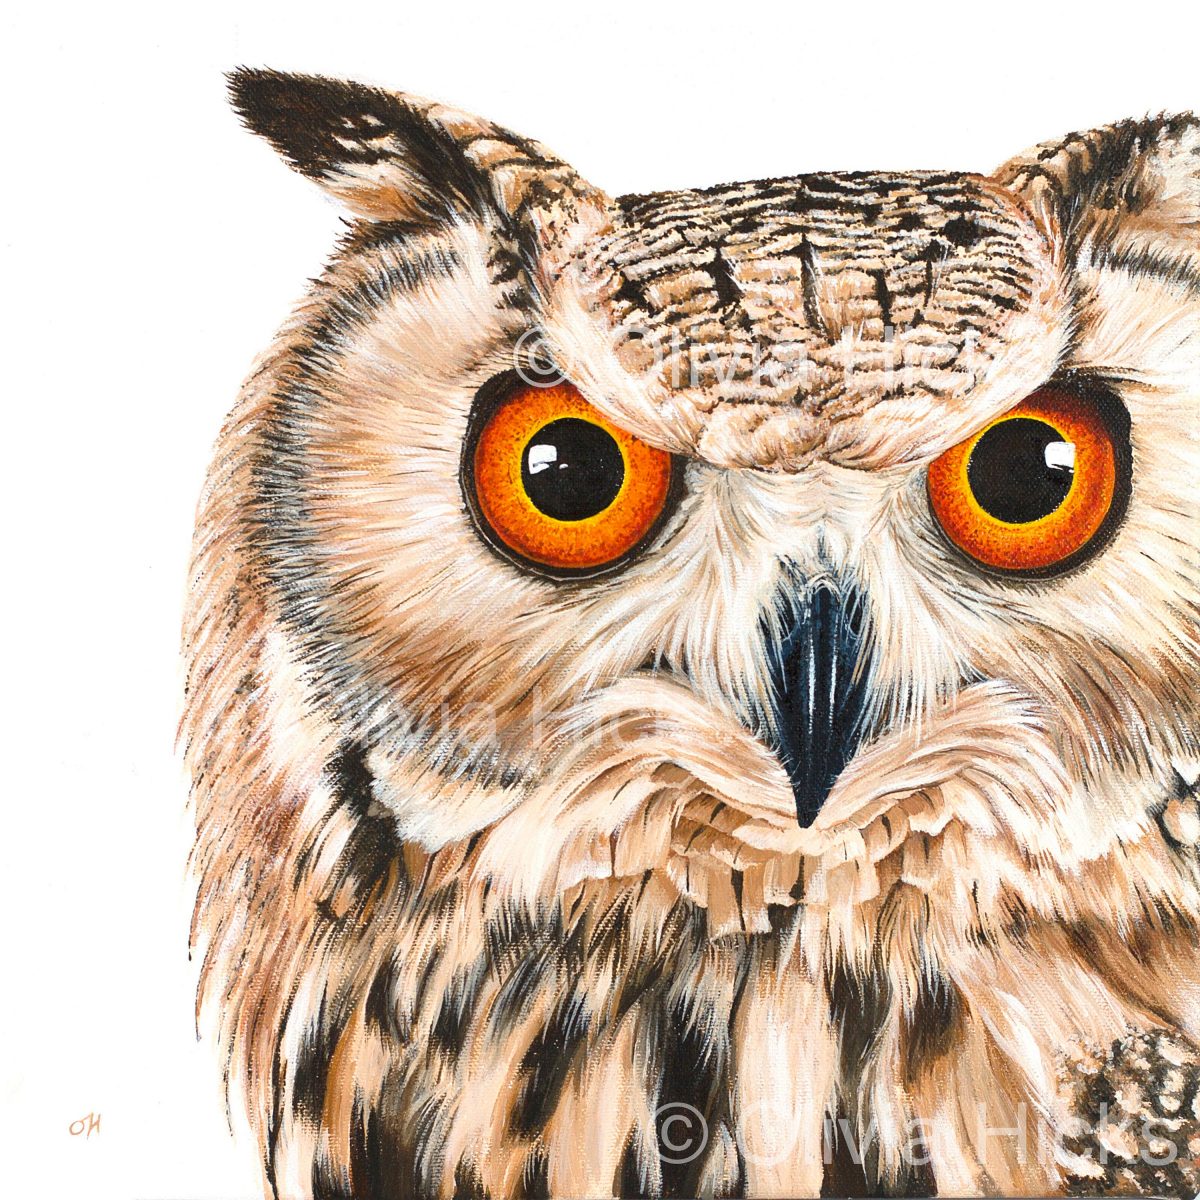 Eagle Owl fine art giclée print